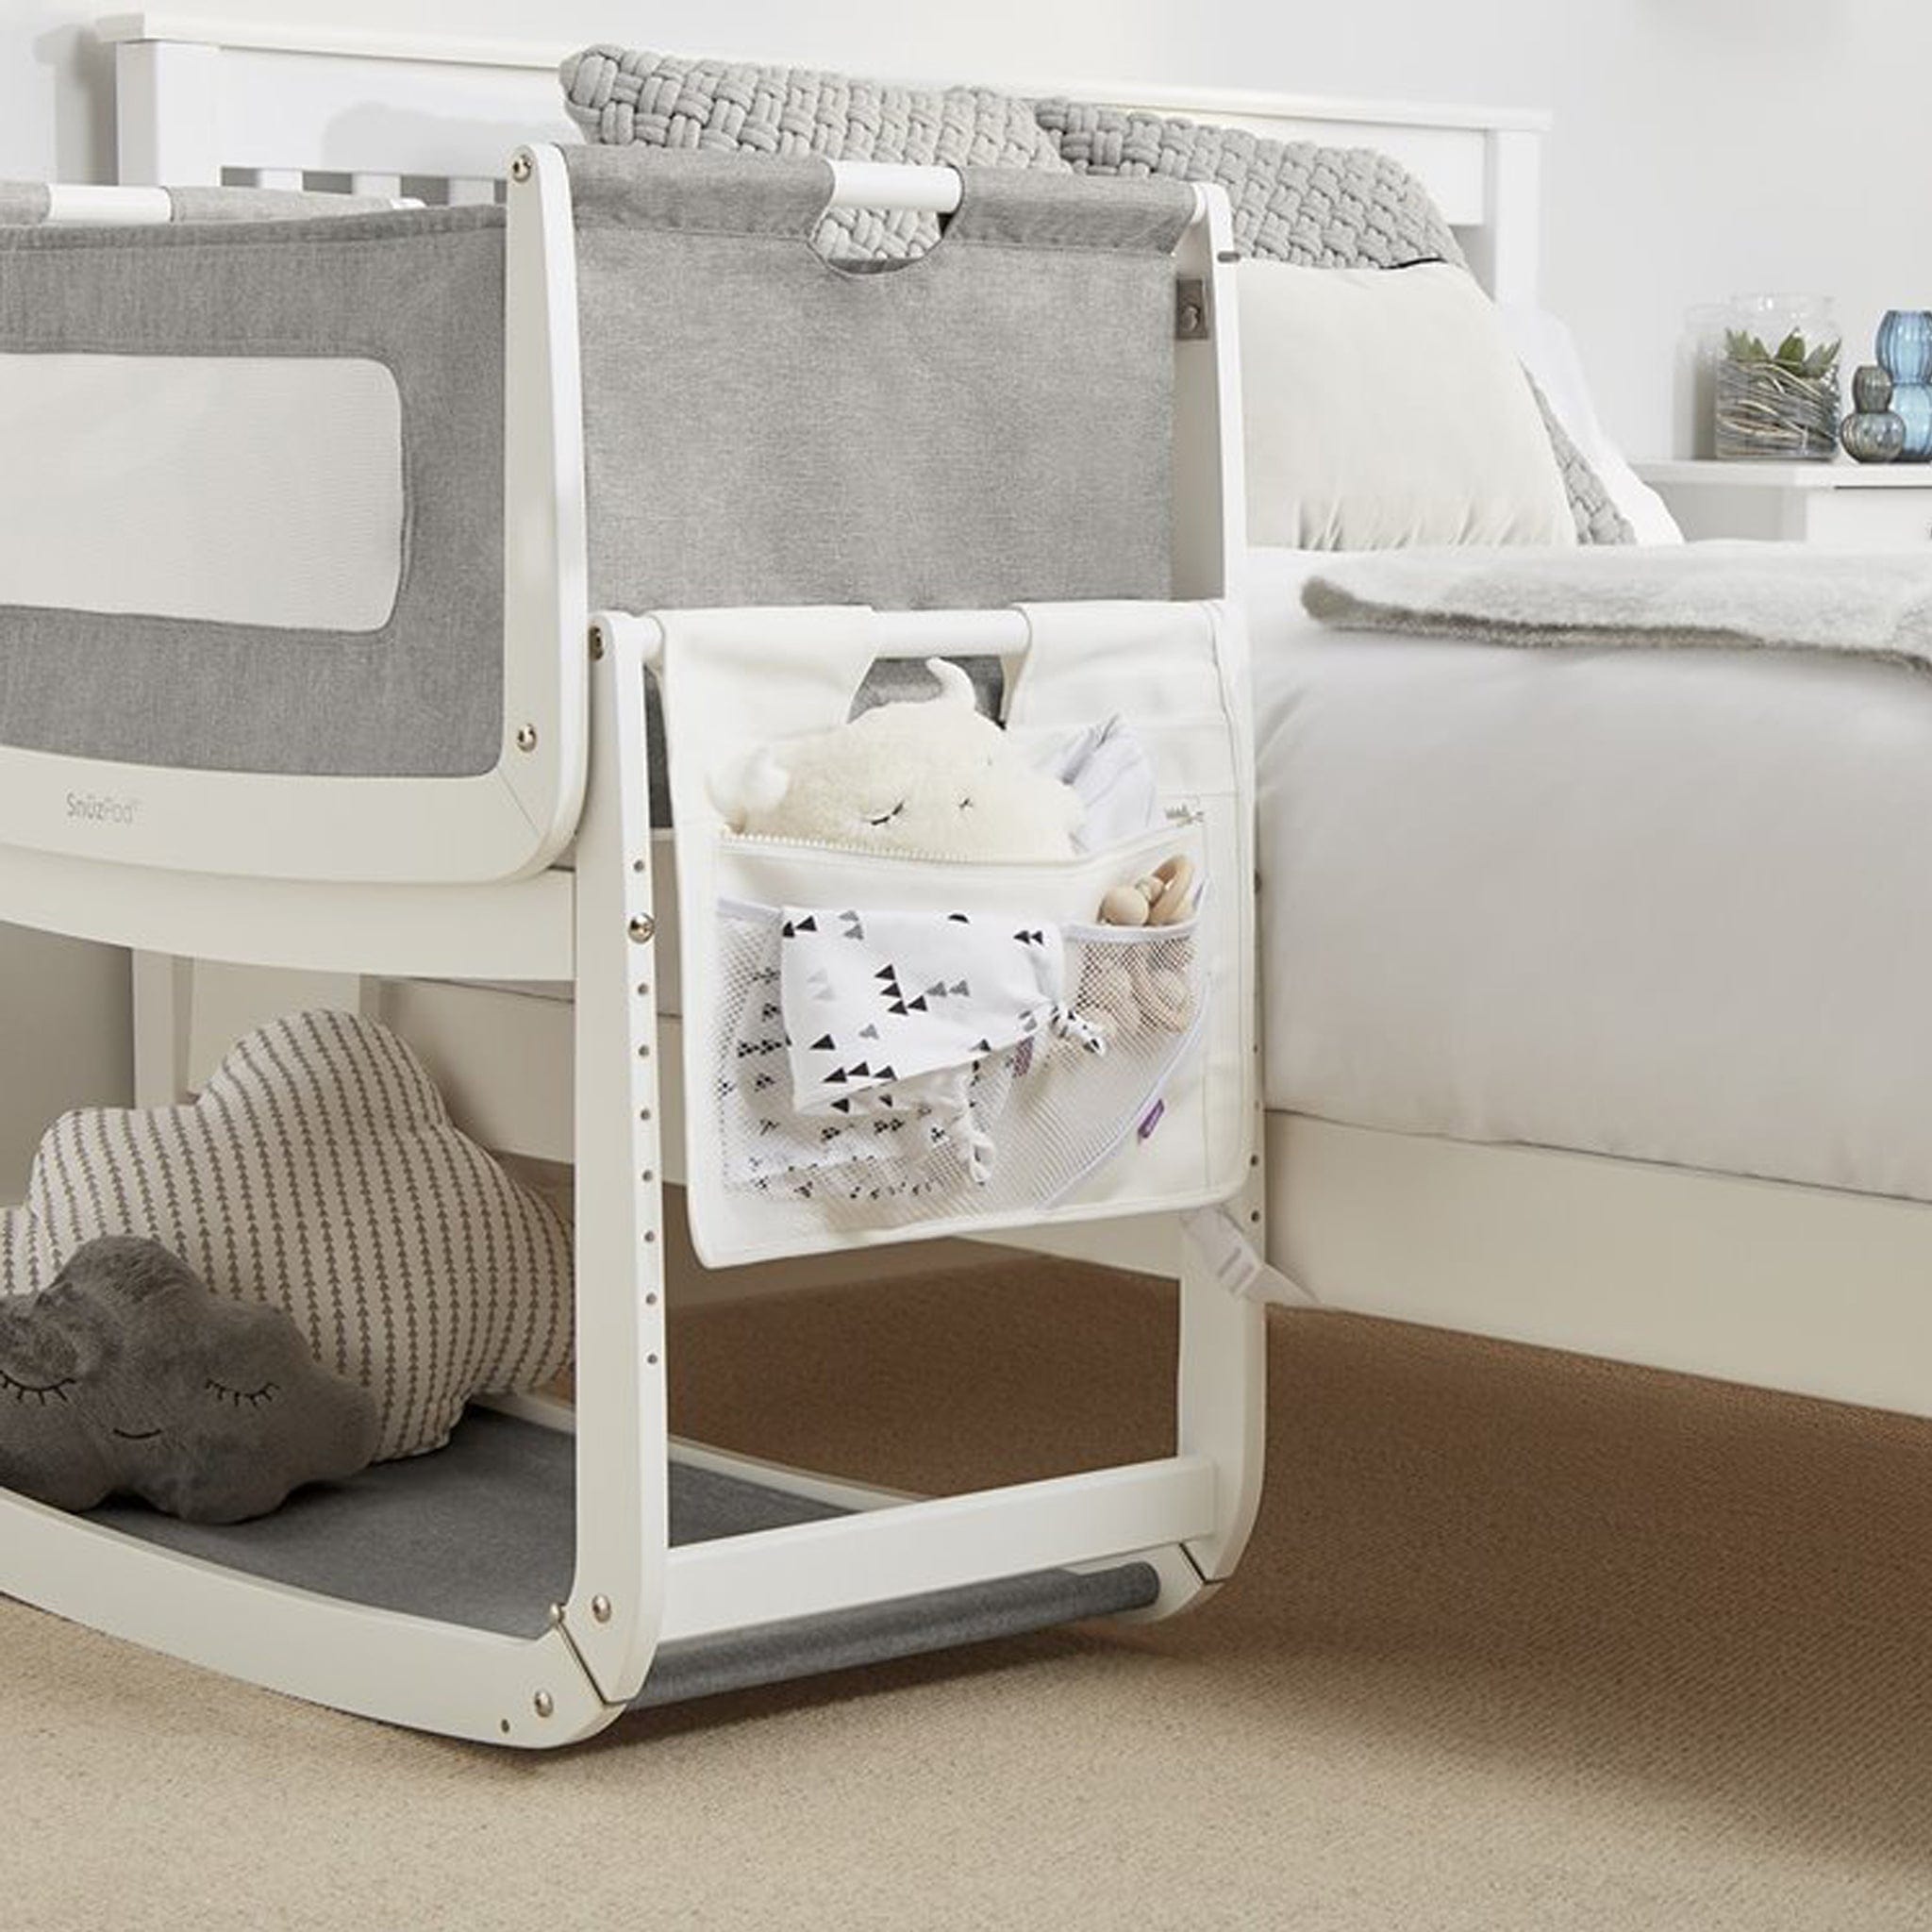 SnuzPod 4 Bedside Crib Comfort Bundle in Natural Edit Oak Cribs 15271-OAK 5060730245343